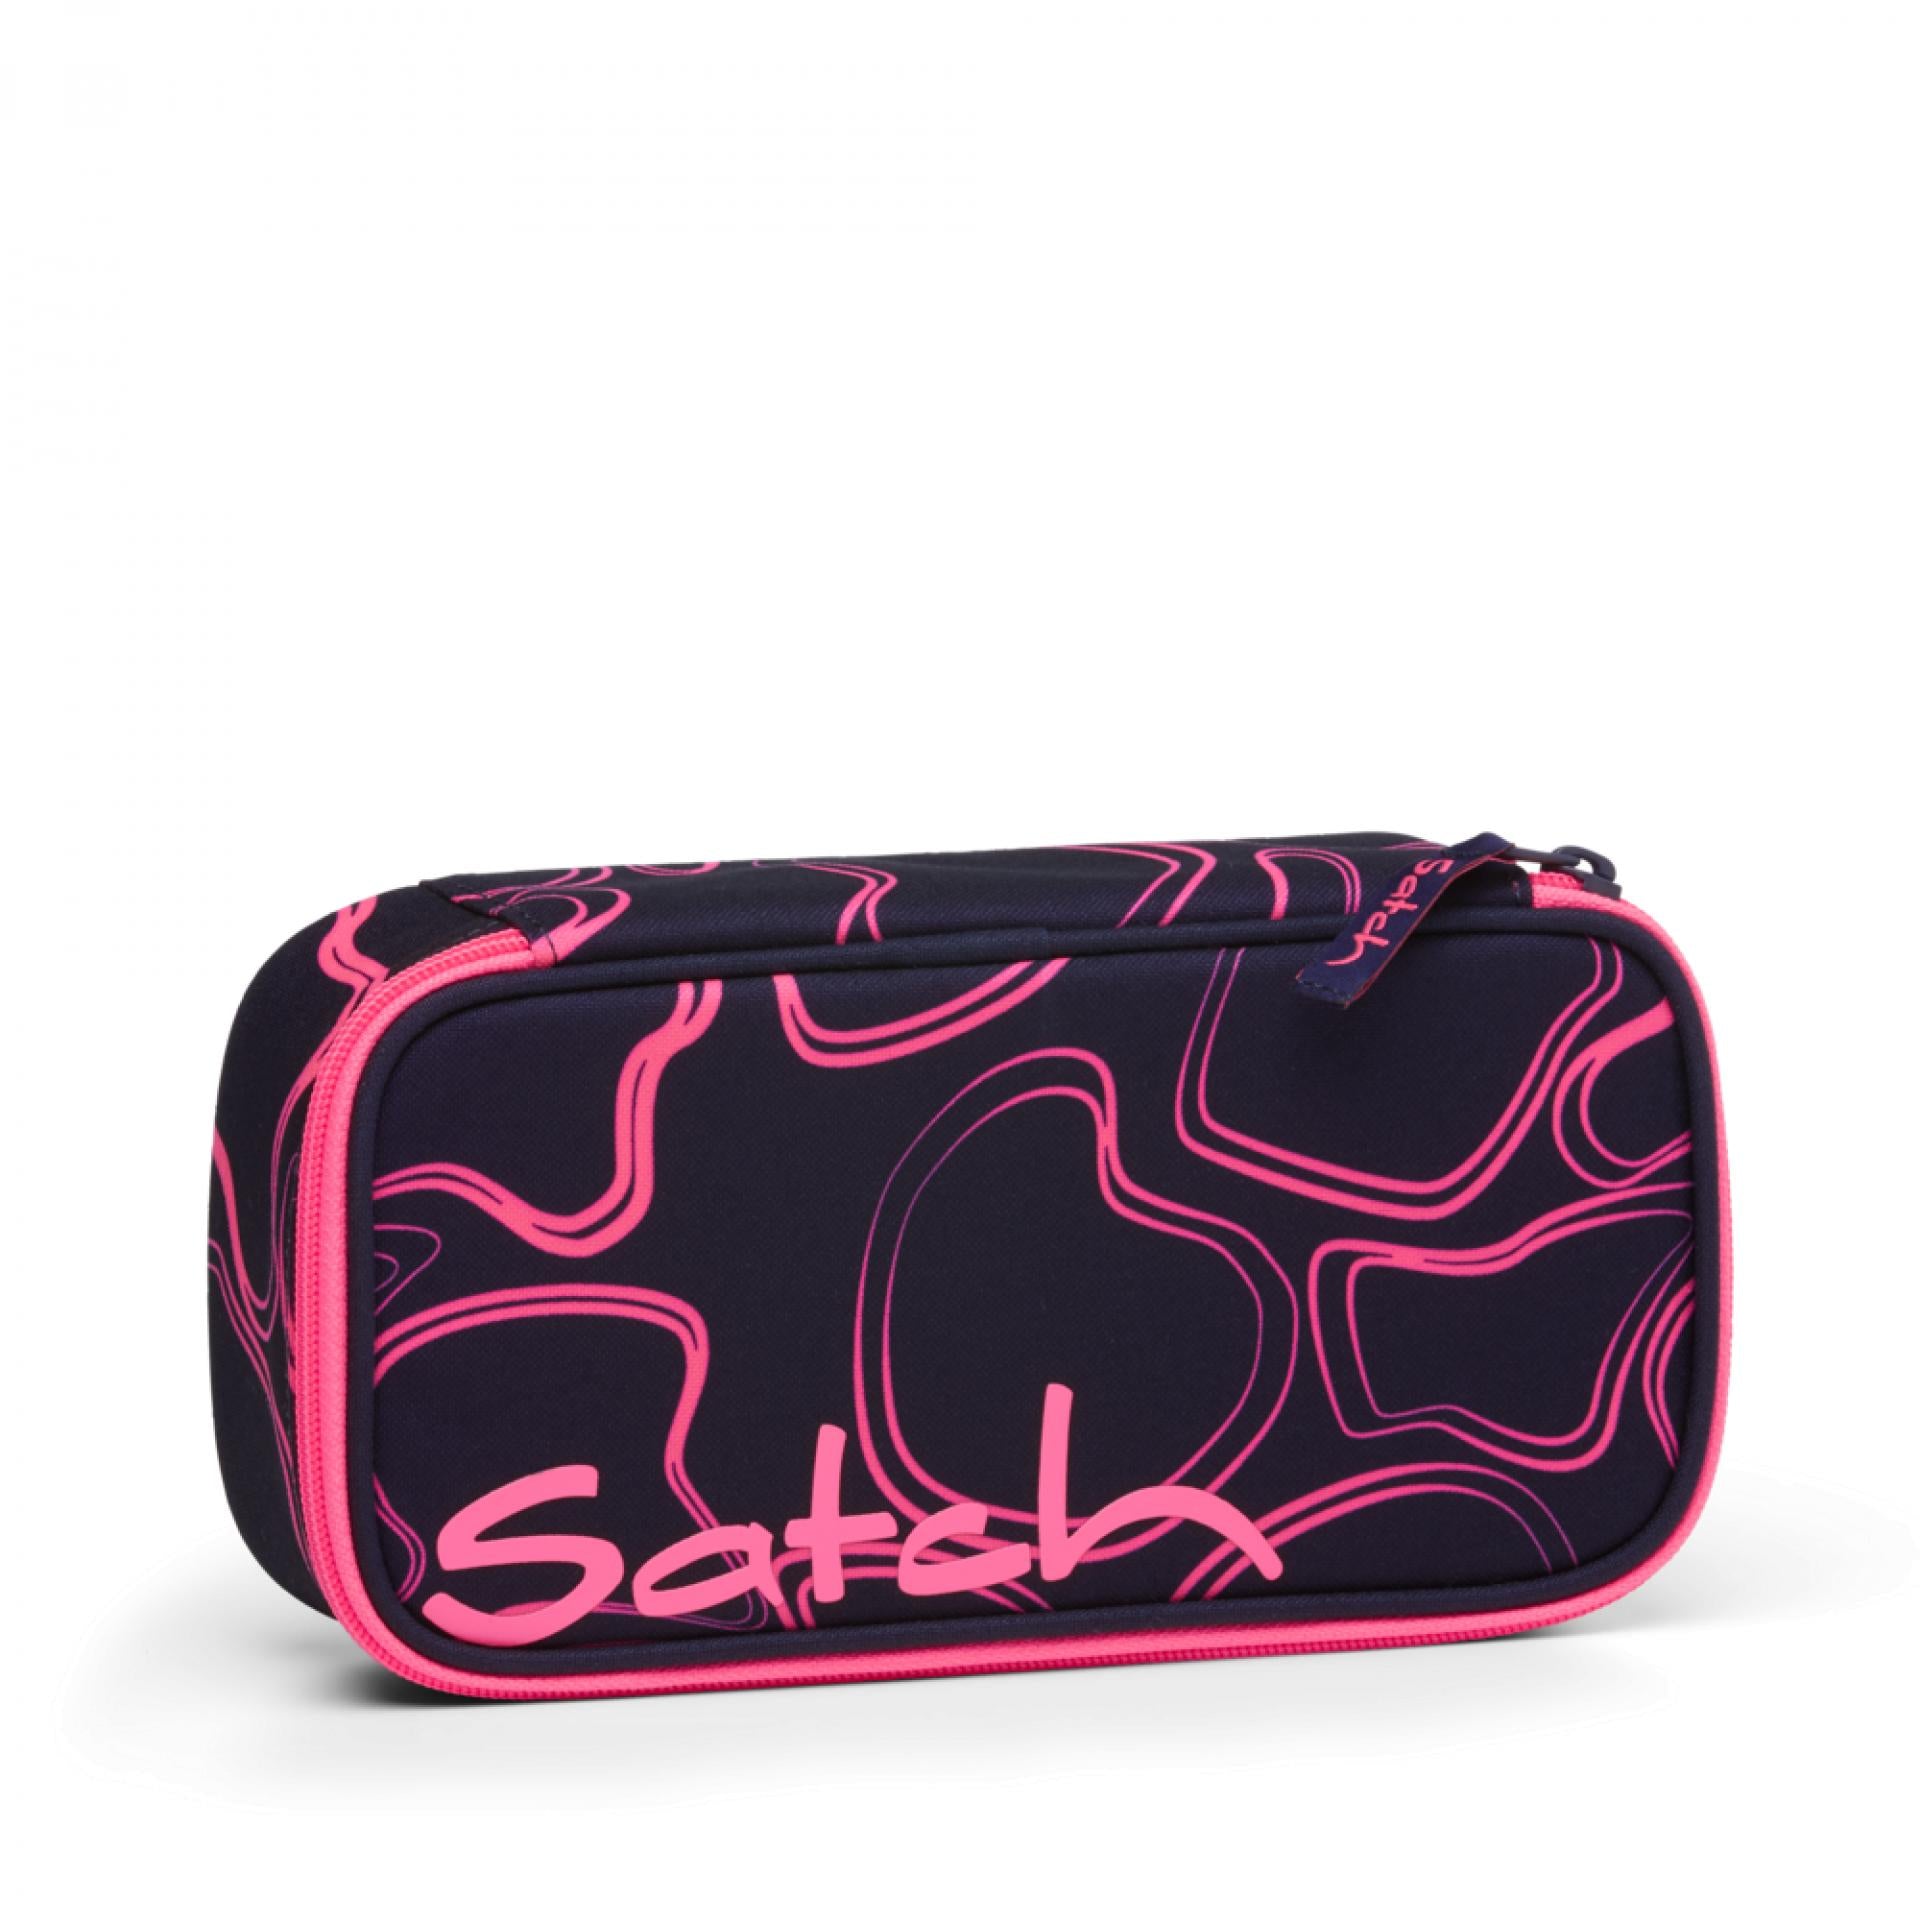 Satch Schlamperbox Stifteetui - Farbe: Pink Supreme